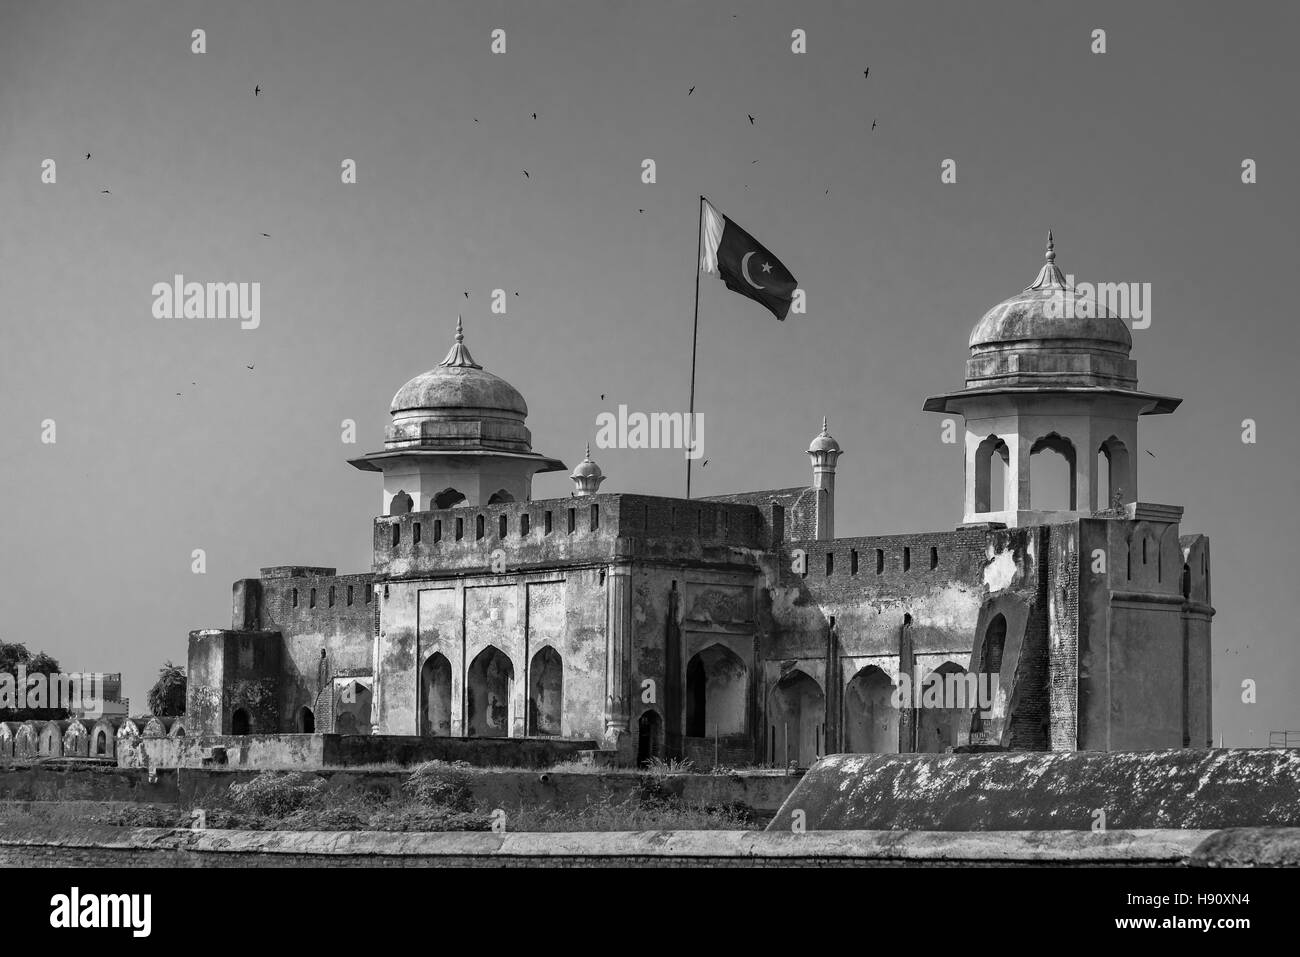 Le Fort de Lahore, localement appelé le Shahi qila est une citadelle dans la ville de Lahore, Punjab, Pakistan. Banque D'Images